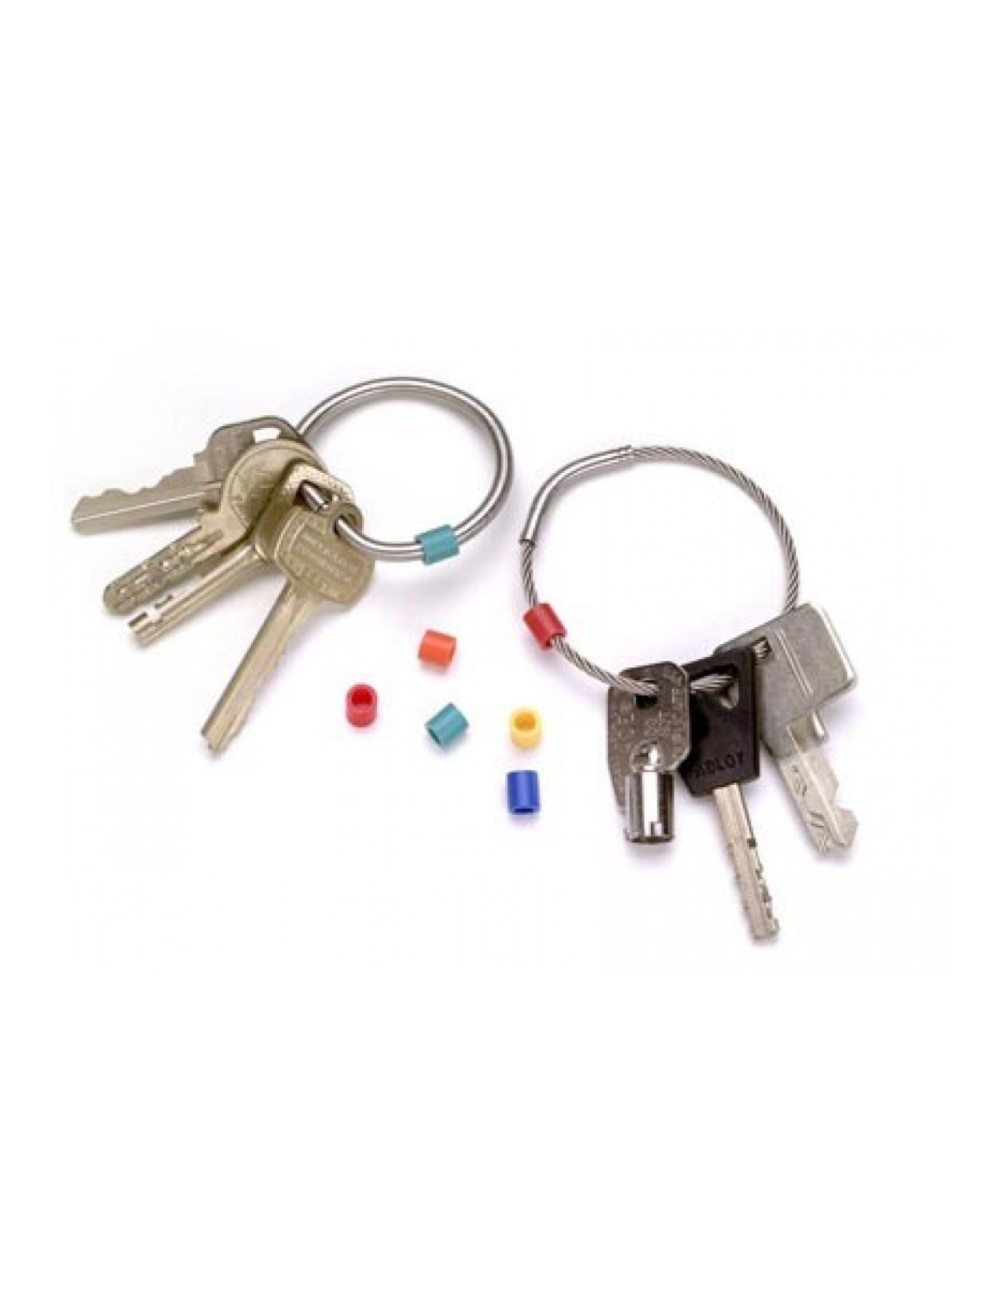 Porte-clés et cartes, protection des clés et cartes sensibles